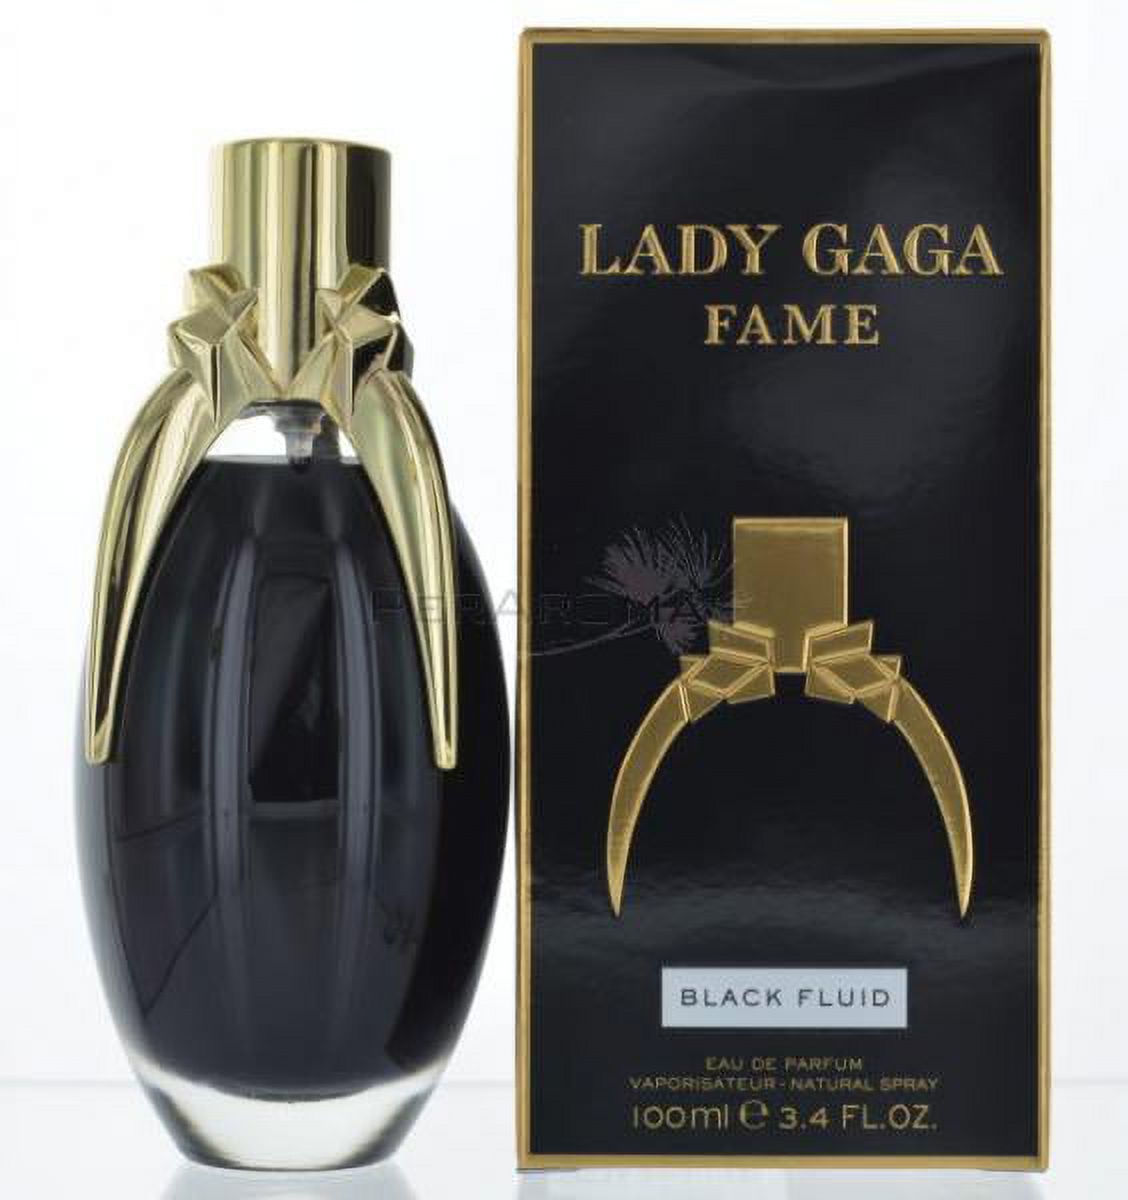 Lady Gaga Fame - image 1 of 1